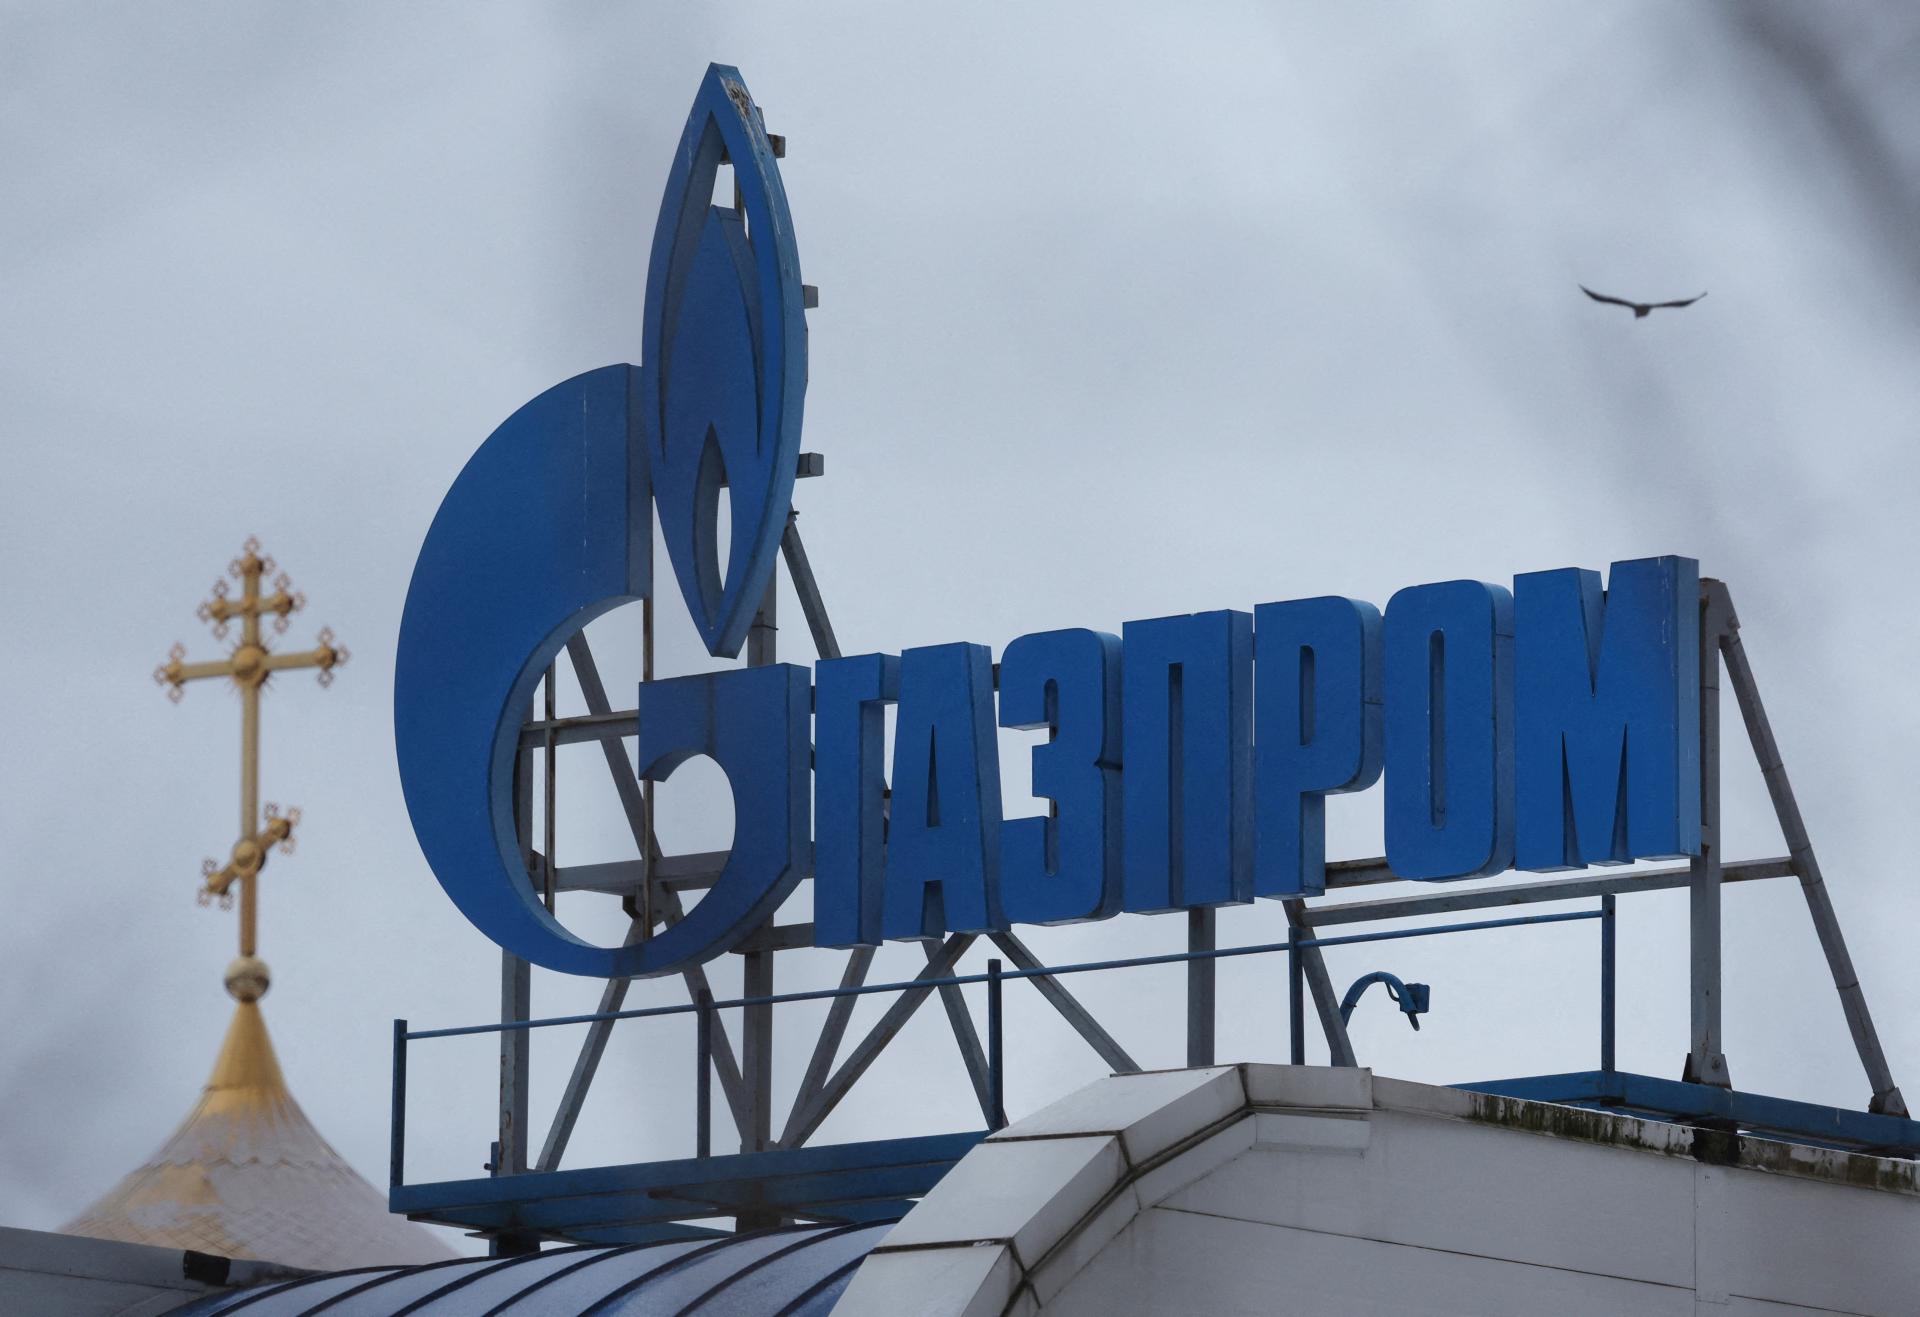 Rakúsko preskúma zmluvu o dodávkach plynu medzi OMV a Gazpromom